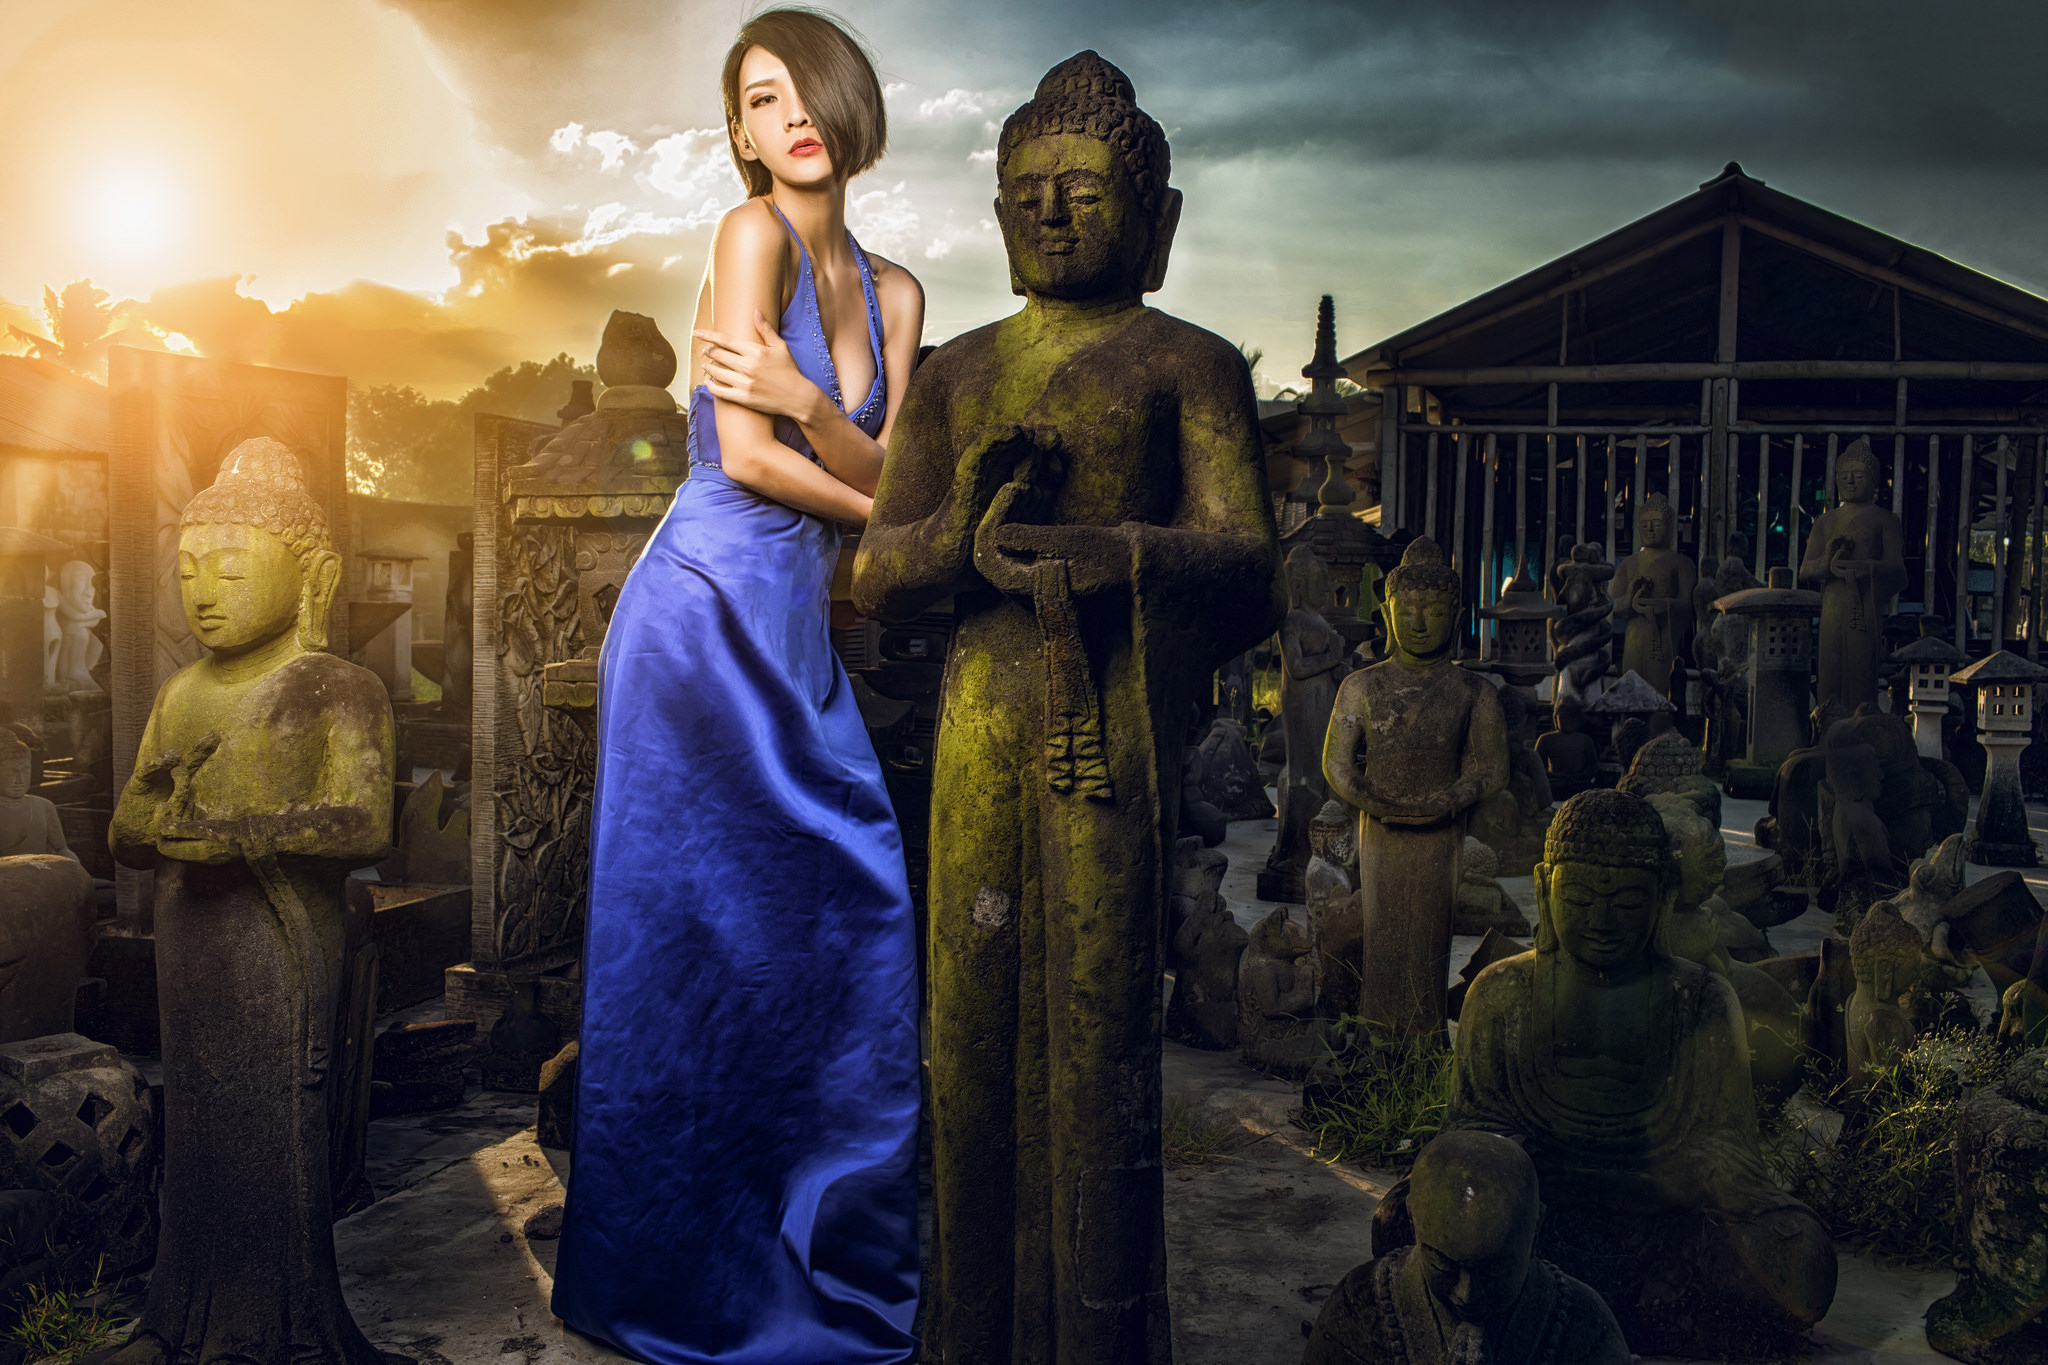 statue, buddha, women, brunette, blue dress, asian, model